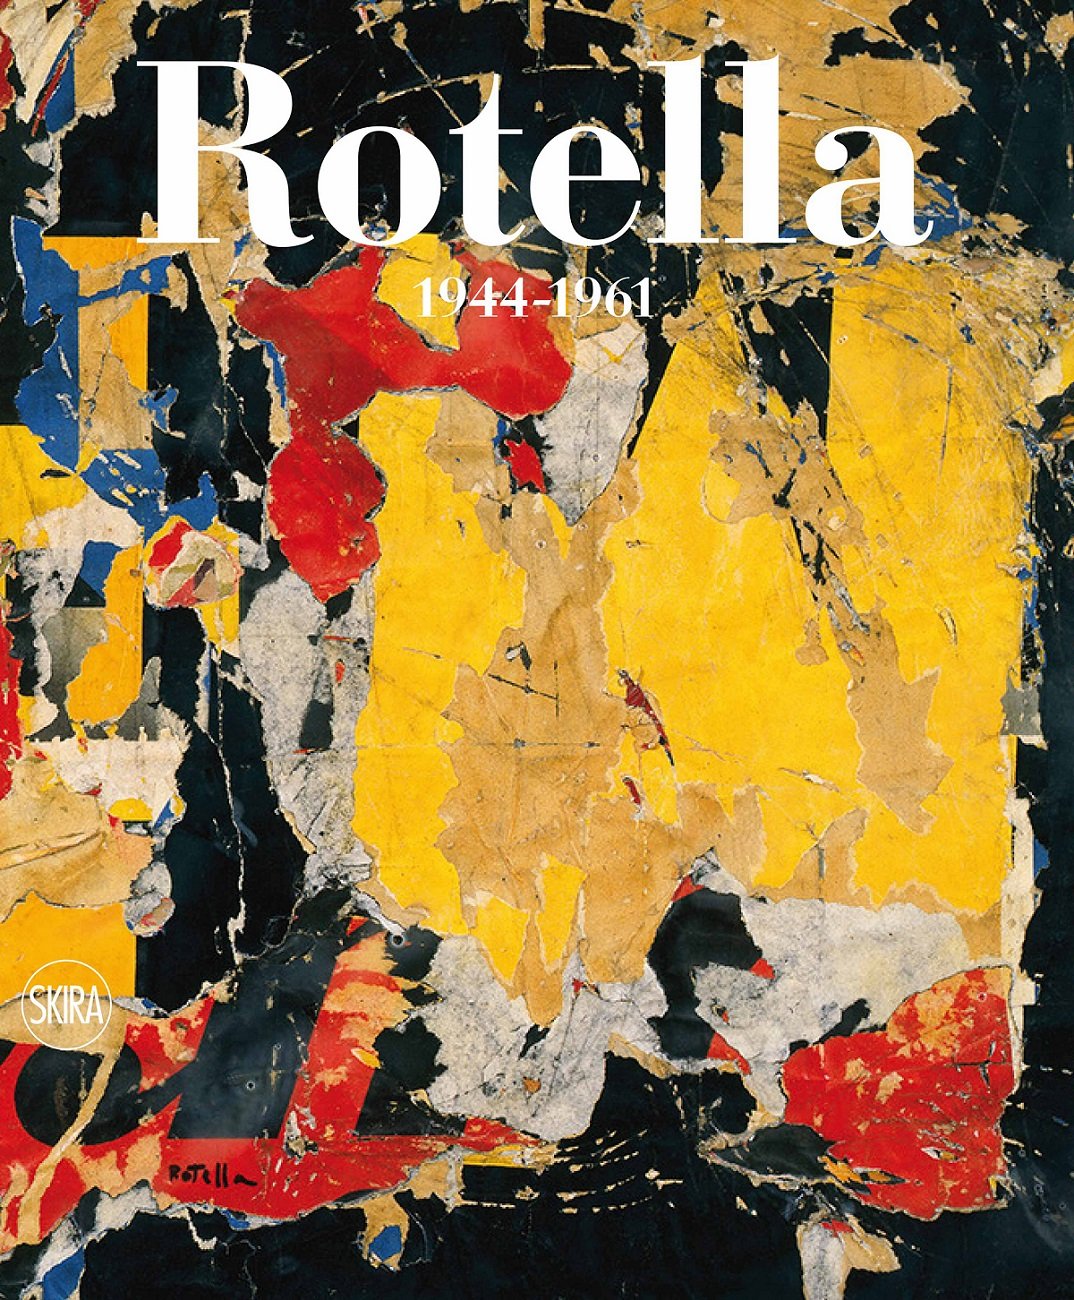 Mimmo Rptella, la copertina del catalogo generale, vol. 1